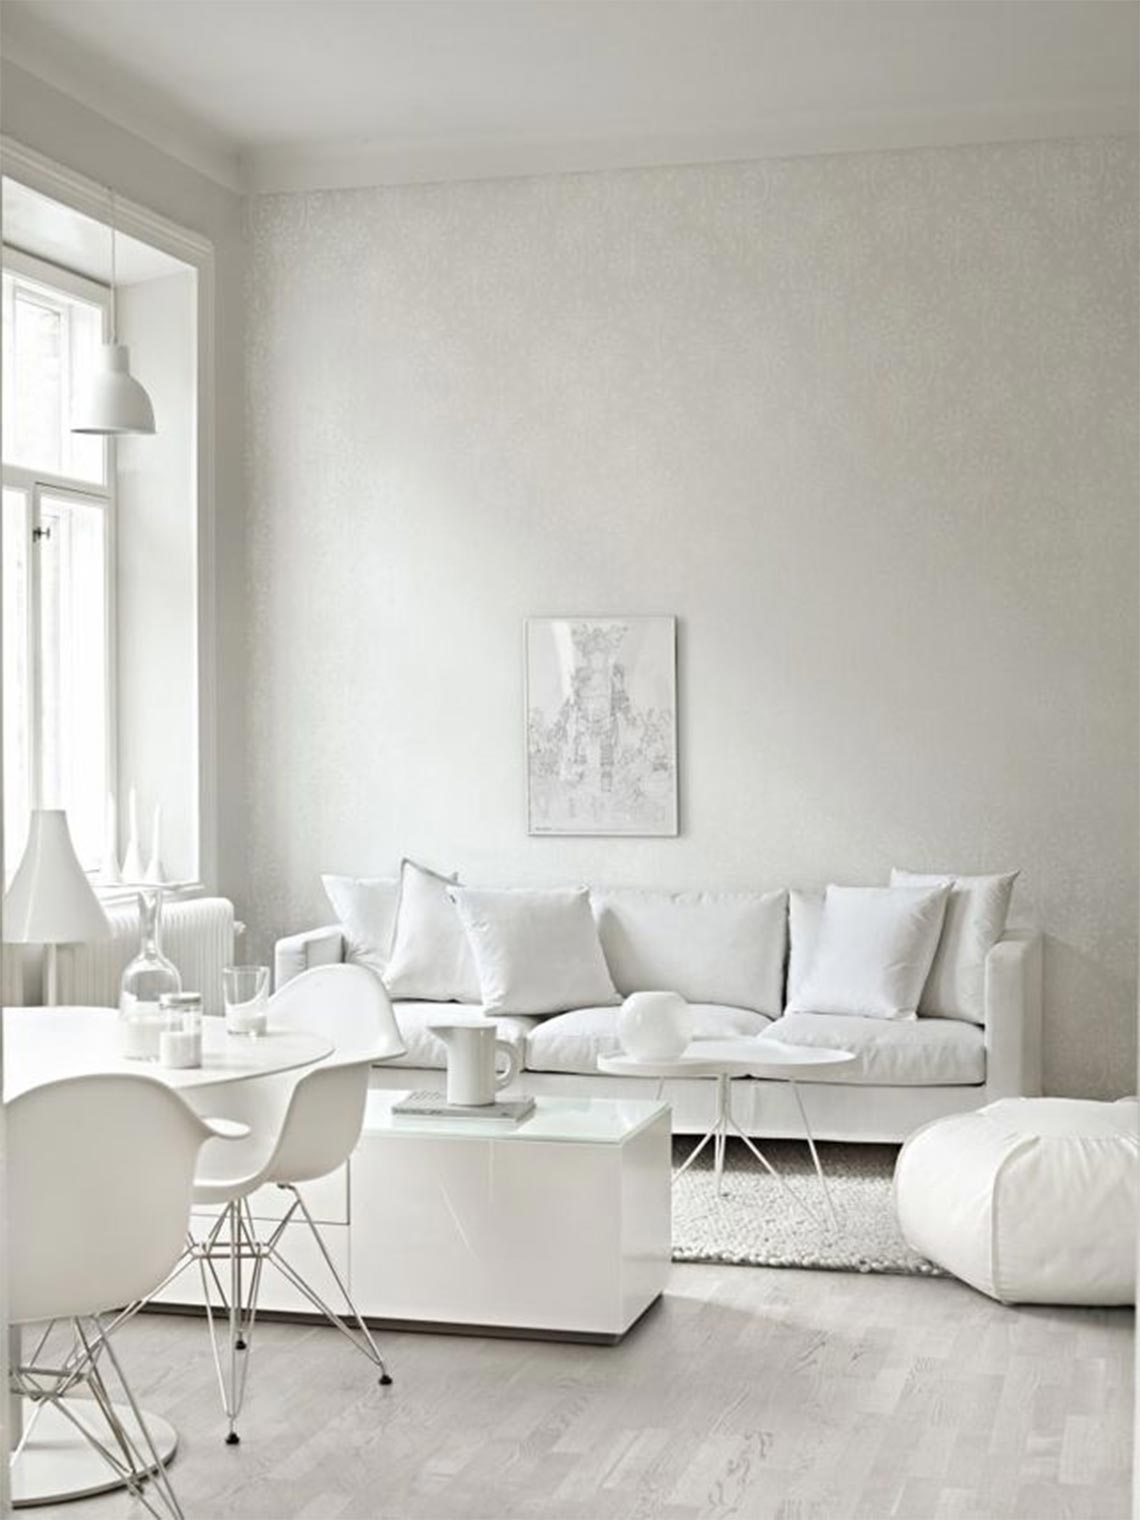 Trang trí nhà với màu trắng để đem lại vẻ tinh khôi và bình yên